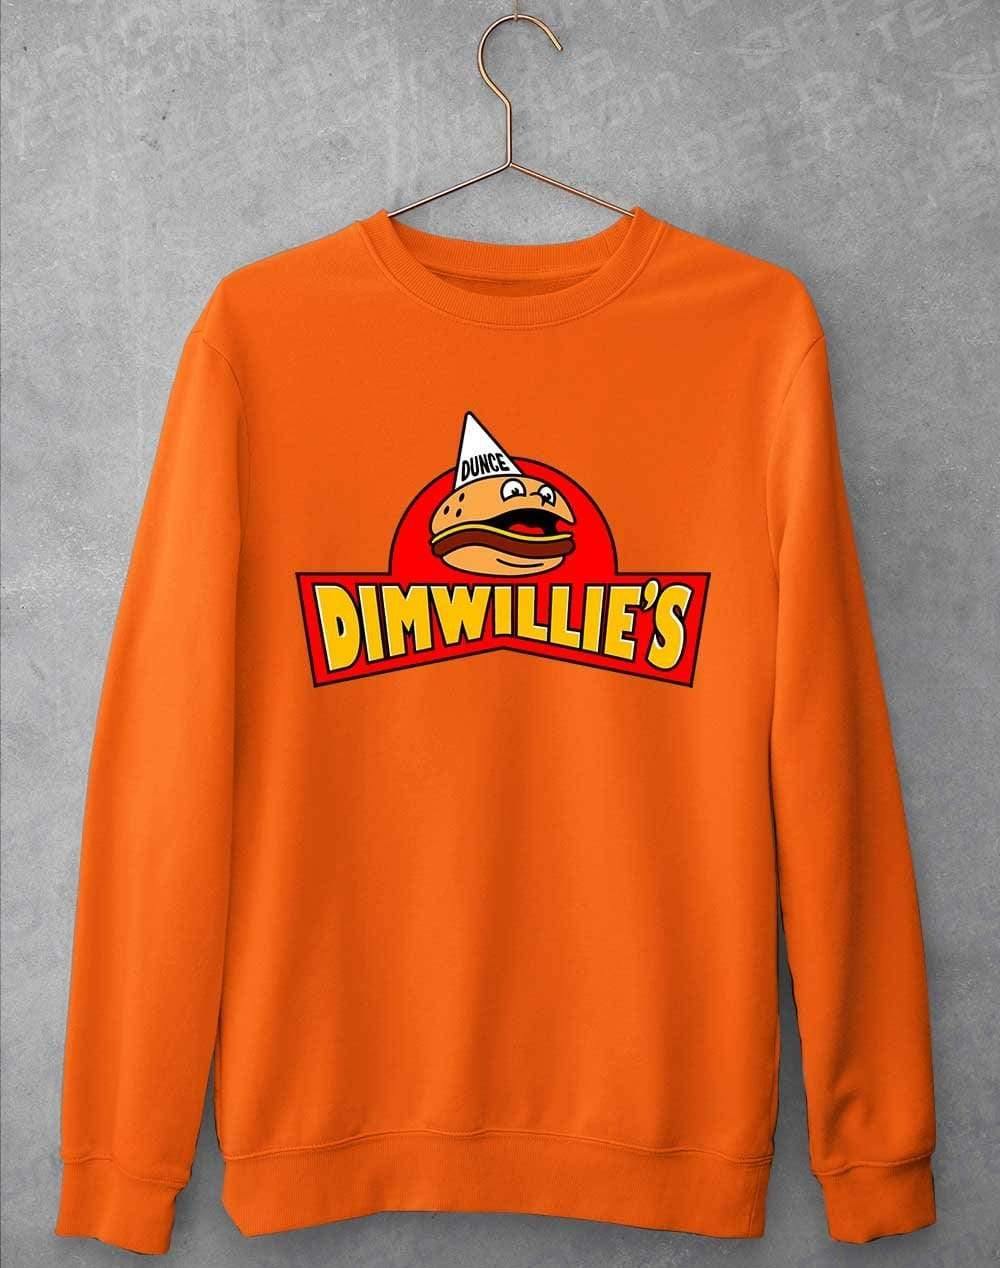 Dimwillies Sweatshirt S / Orange Crush  - Off World Tees